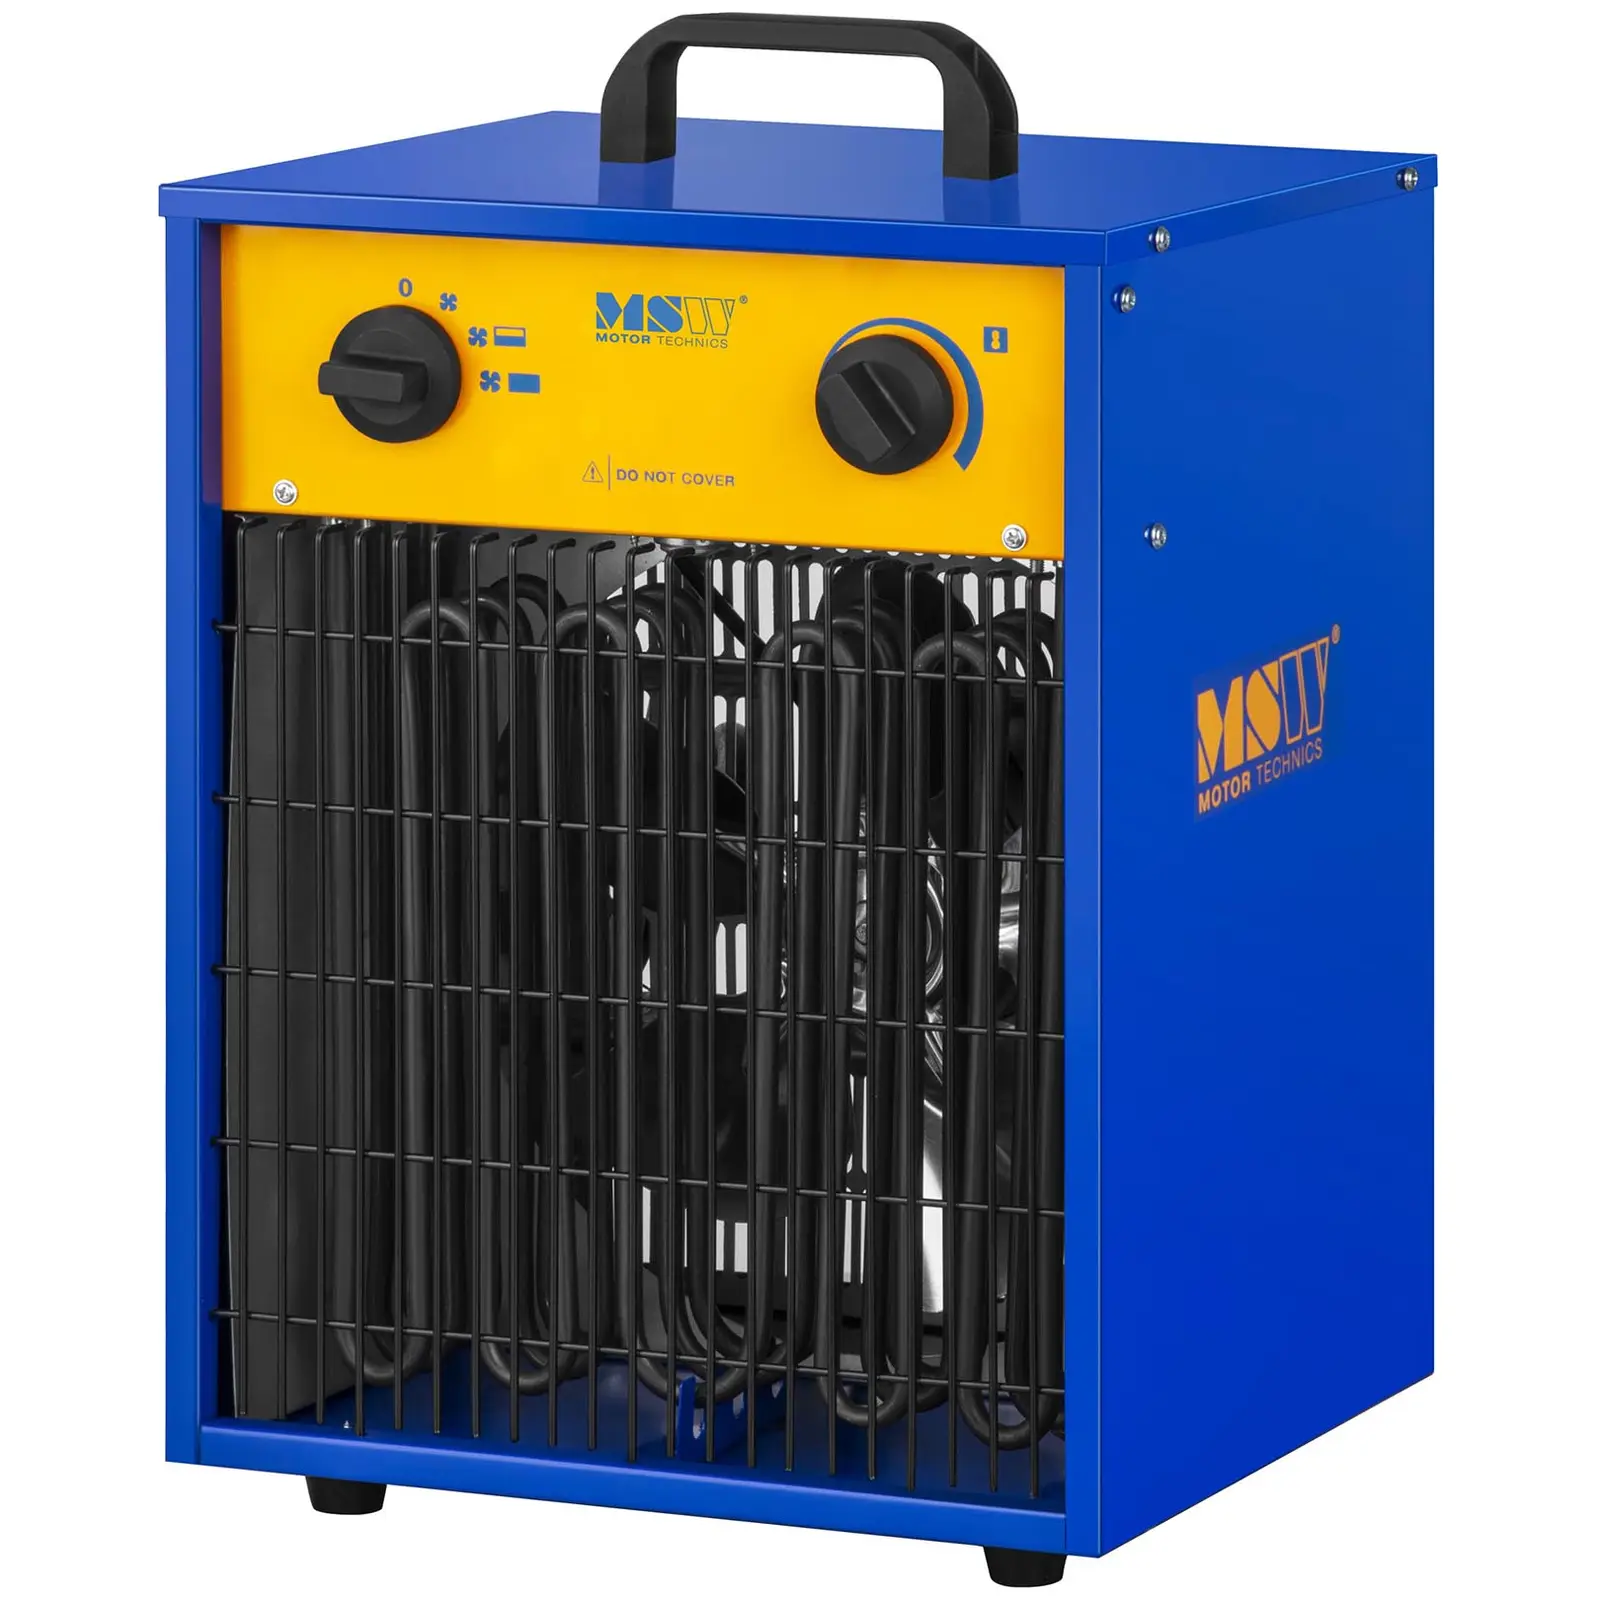 Chauffage à air pulsé électrique avec fonction de refroidissement - 0 à 85 °C - 9 000 W